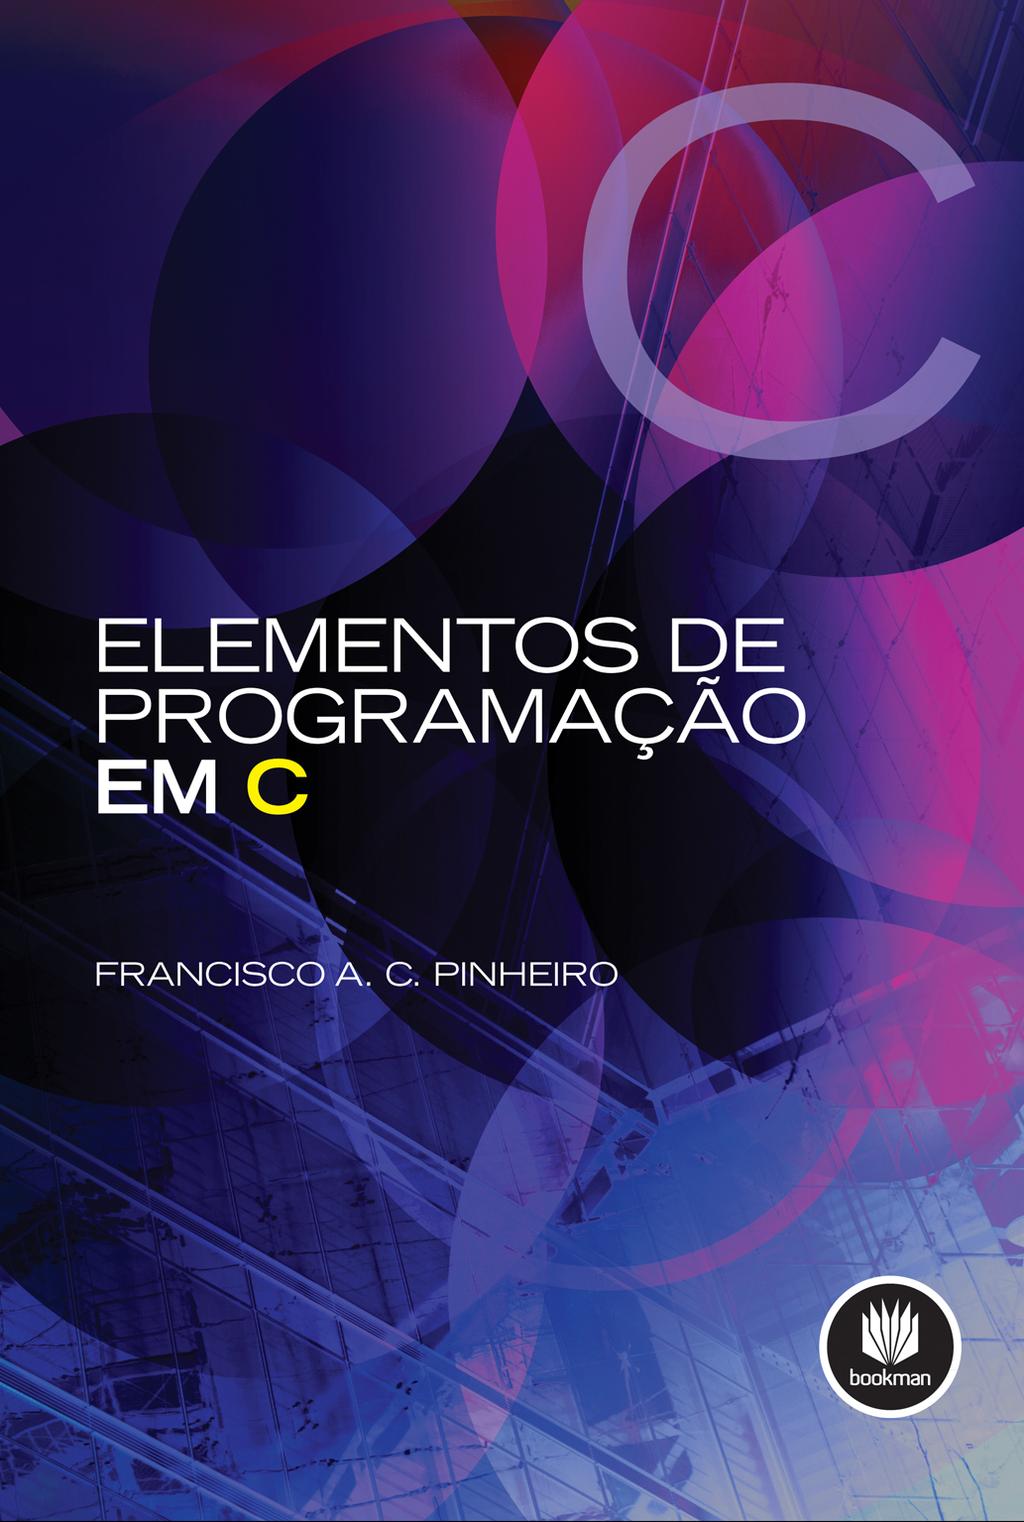 Elementos de programação em C Entrada e saída: arquivos Francisco A. C. Pinheiro, Elementos de Programação em C, Bookman, 2012.